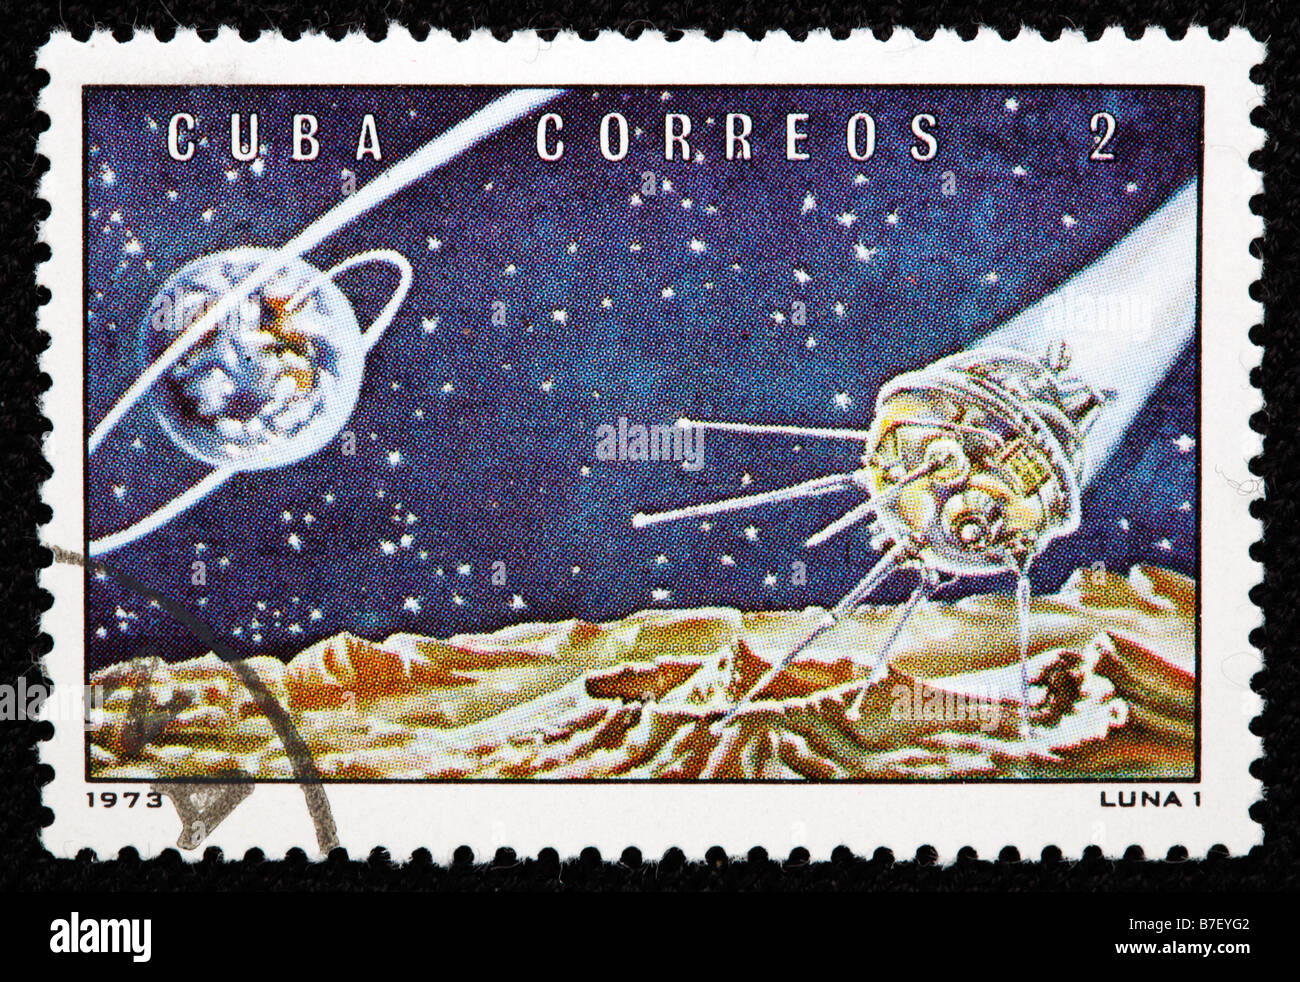 Sowjetischen Mond Orbitalstation "Luna 1", Briefmarke, Kuba, 1973 Stockfoto